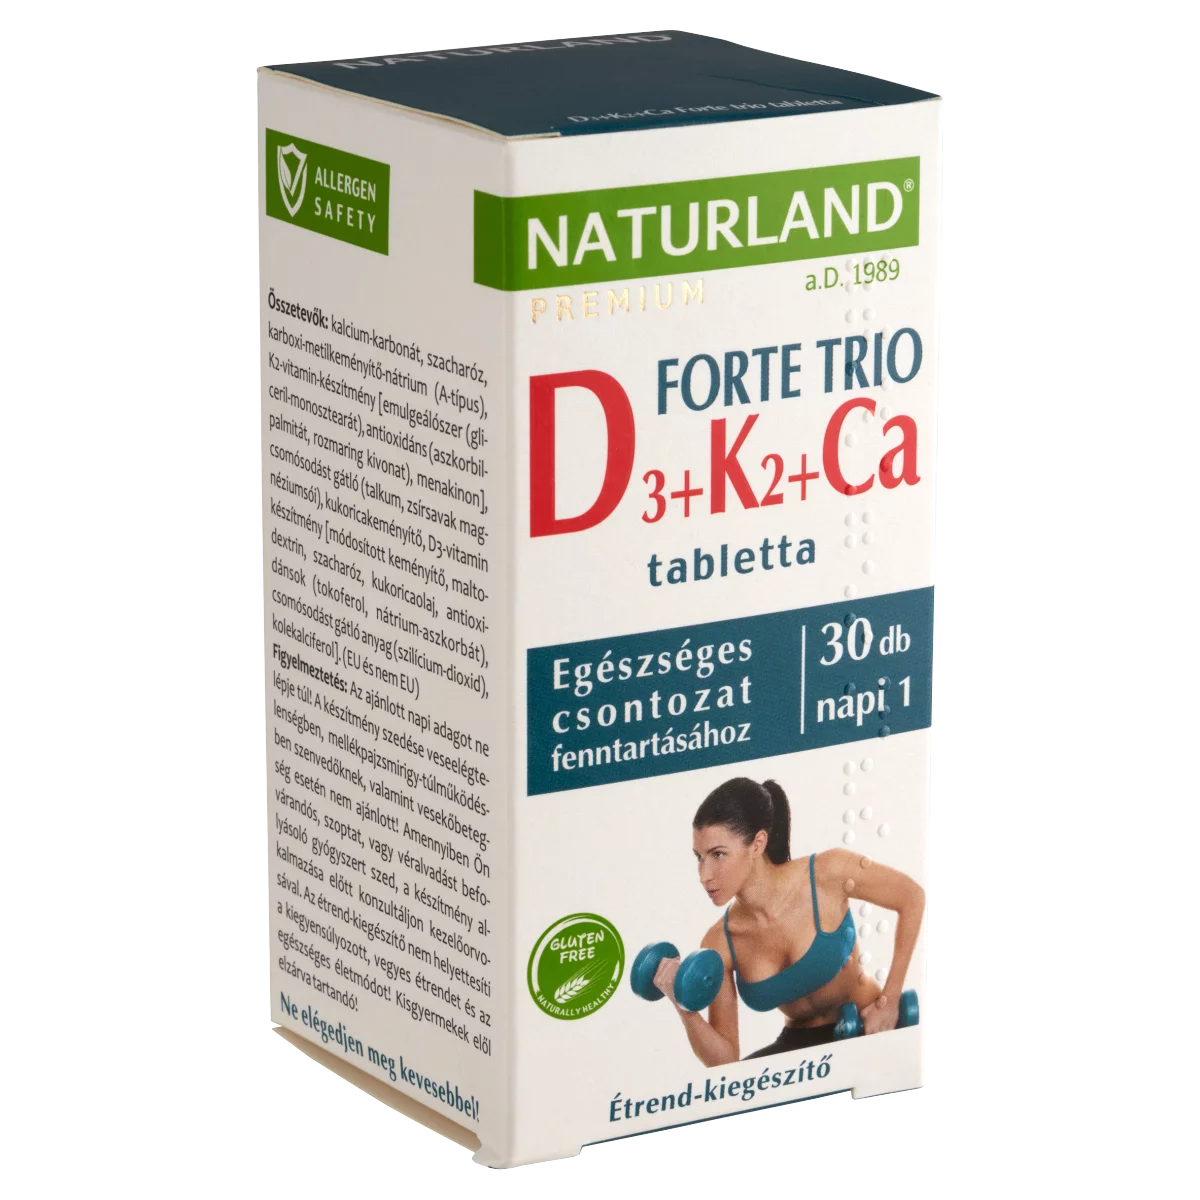 Naturland Premium D3 + K2 + Ca Forte Trio étrend-kiegészítő tabletta 30 db 39,4 g